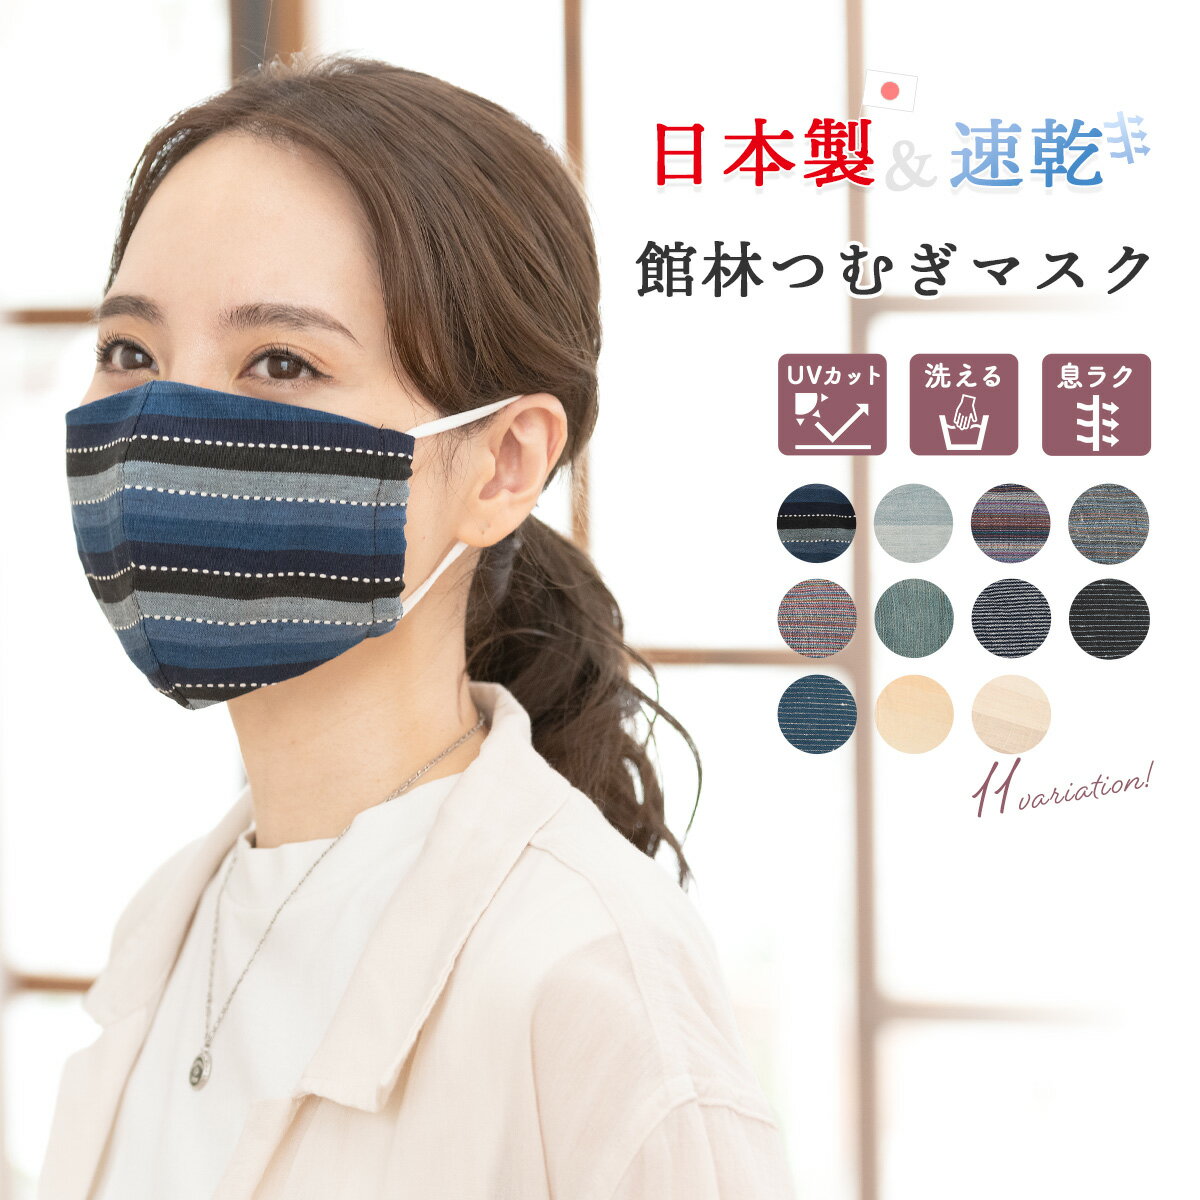 マスク 日本製 冷感 洗える 館林紬 おしゃれ クールマスク